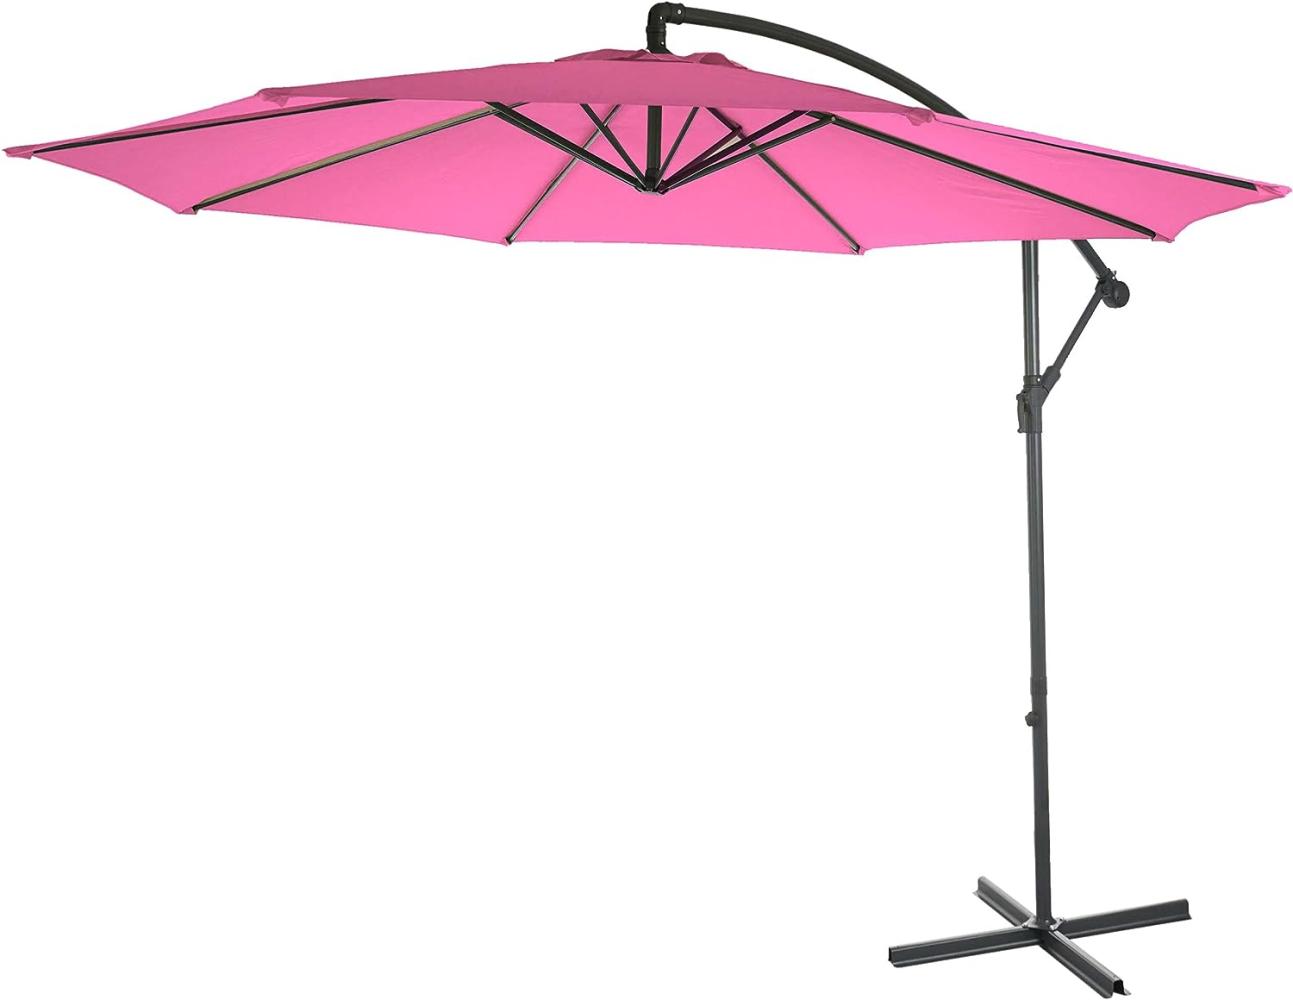 Ampelschirm Acerra, Sonnenschirm Sonnenschutz, Ø 3m neigbar, Polyester/Stahl 11kg ~ pink ohne Ständer Bild 1